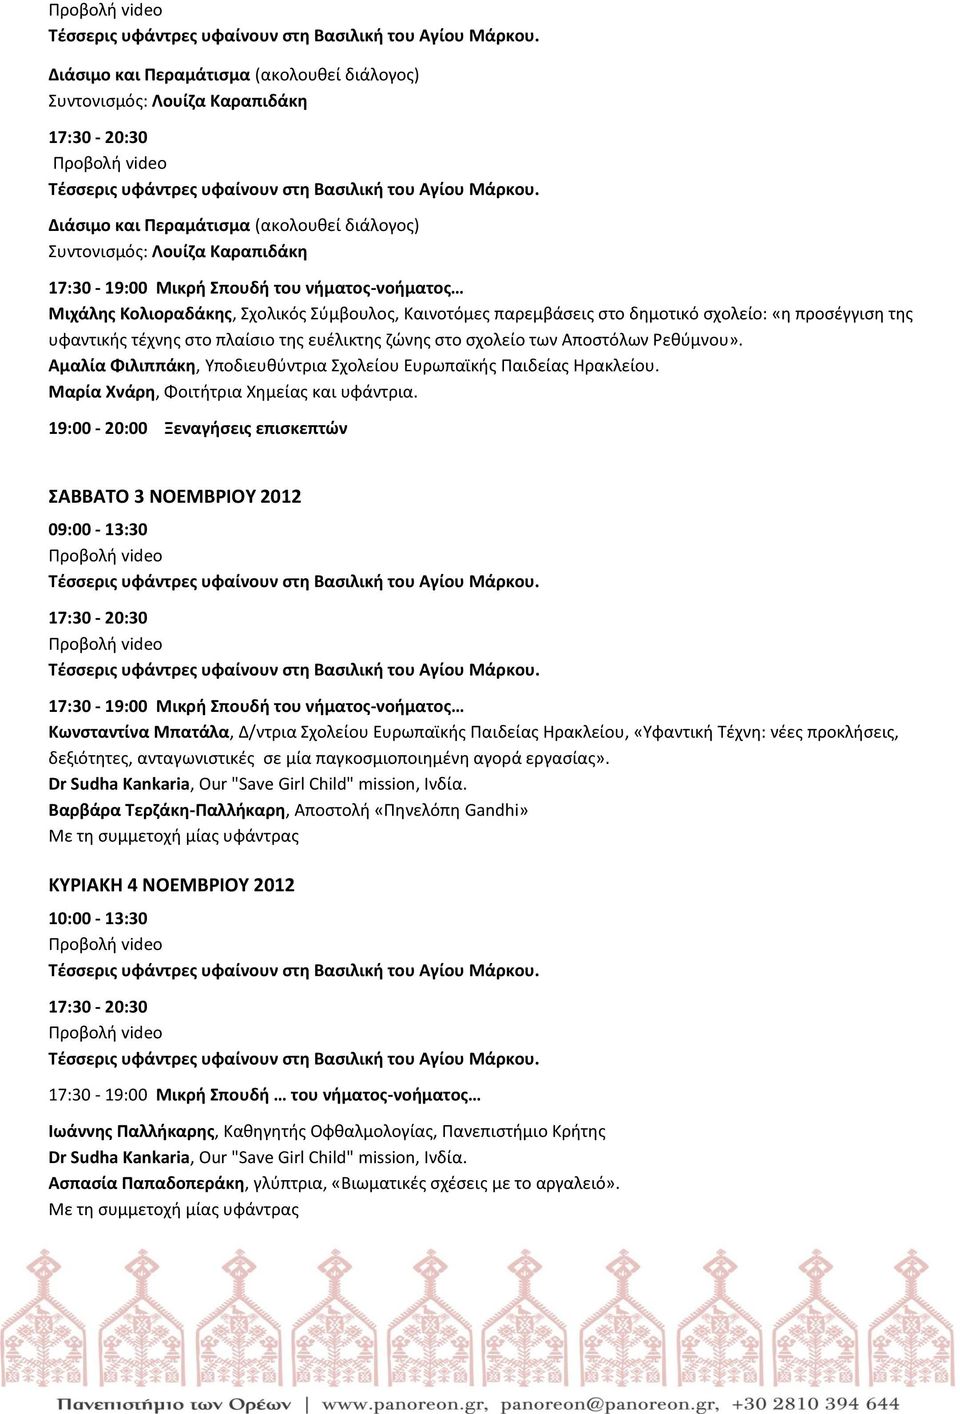 ΣΑΒΒΑΤΟ 3 ΝΟΕΜΒΡΙΟΥ 2012 Κωνσταντίνα Μπατάλα, Δ/ντρια Σχολείου Ευρωπαϊκής Παιδείας Ηρακλείου, «Υφαντική Τέχνη: νέες προκλήσεις, δεξιότητες, ανταγωνιστικές σε μία παγκοσμιοποιημένη αγορά εργασίας».